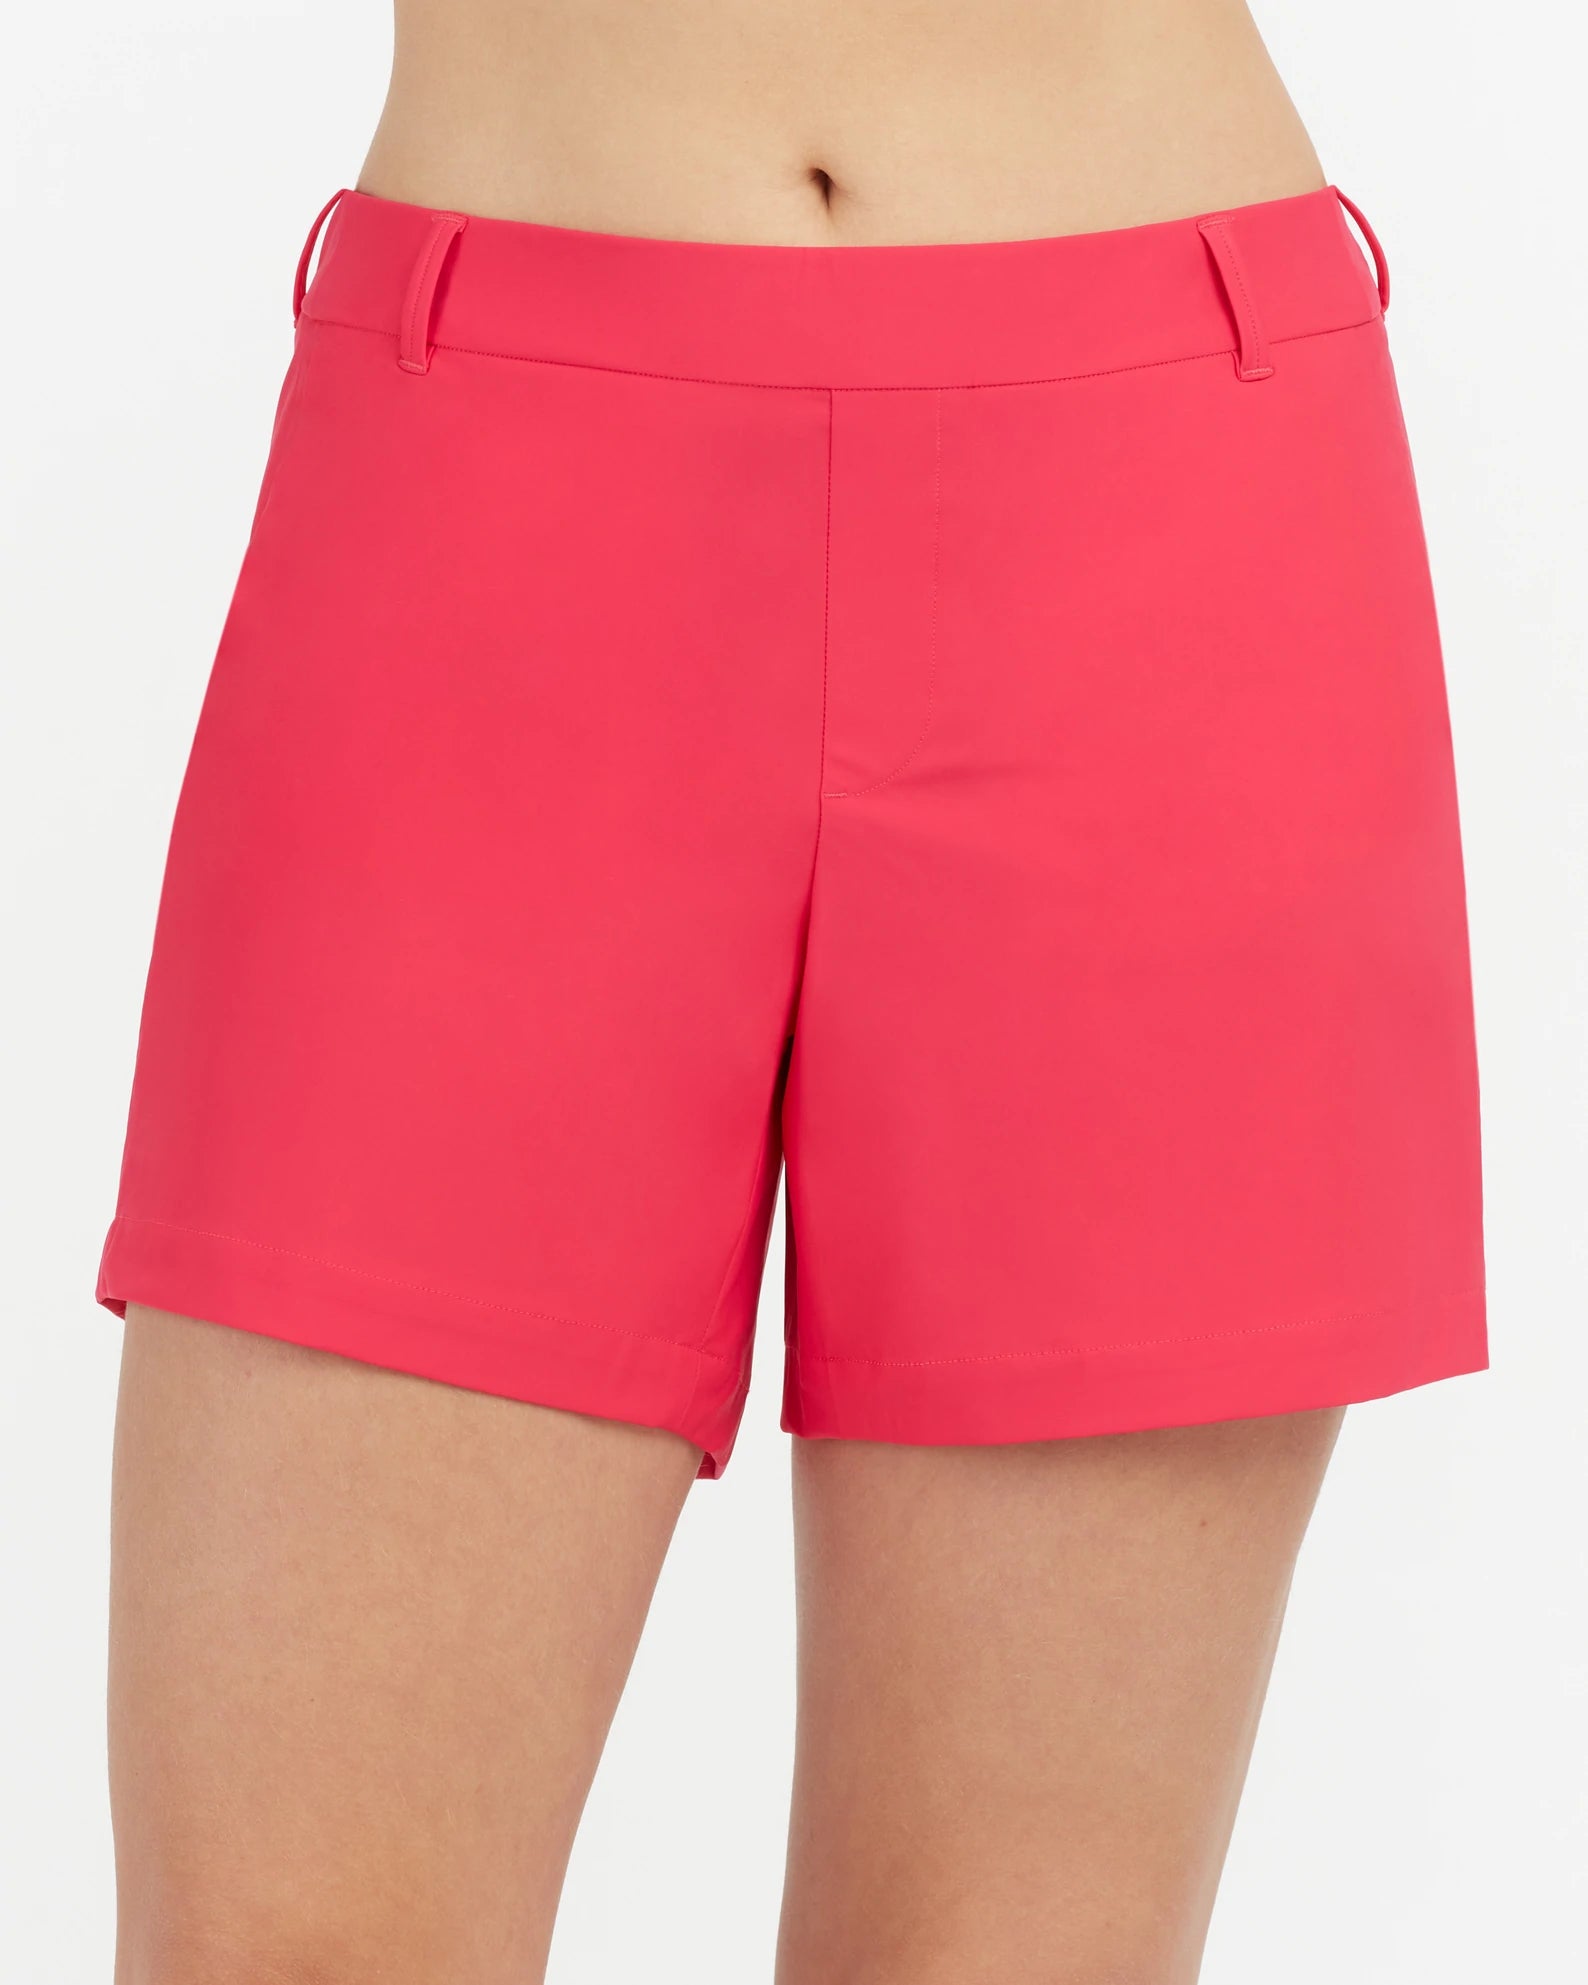 Spanx 6” sunshine shorts - green camo - NWT size L